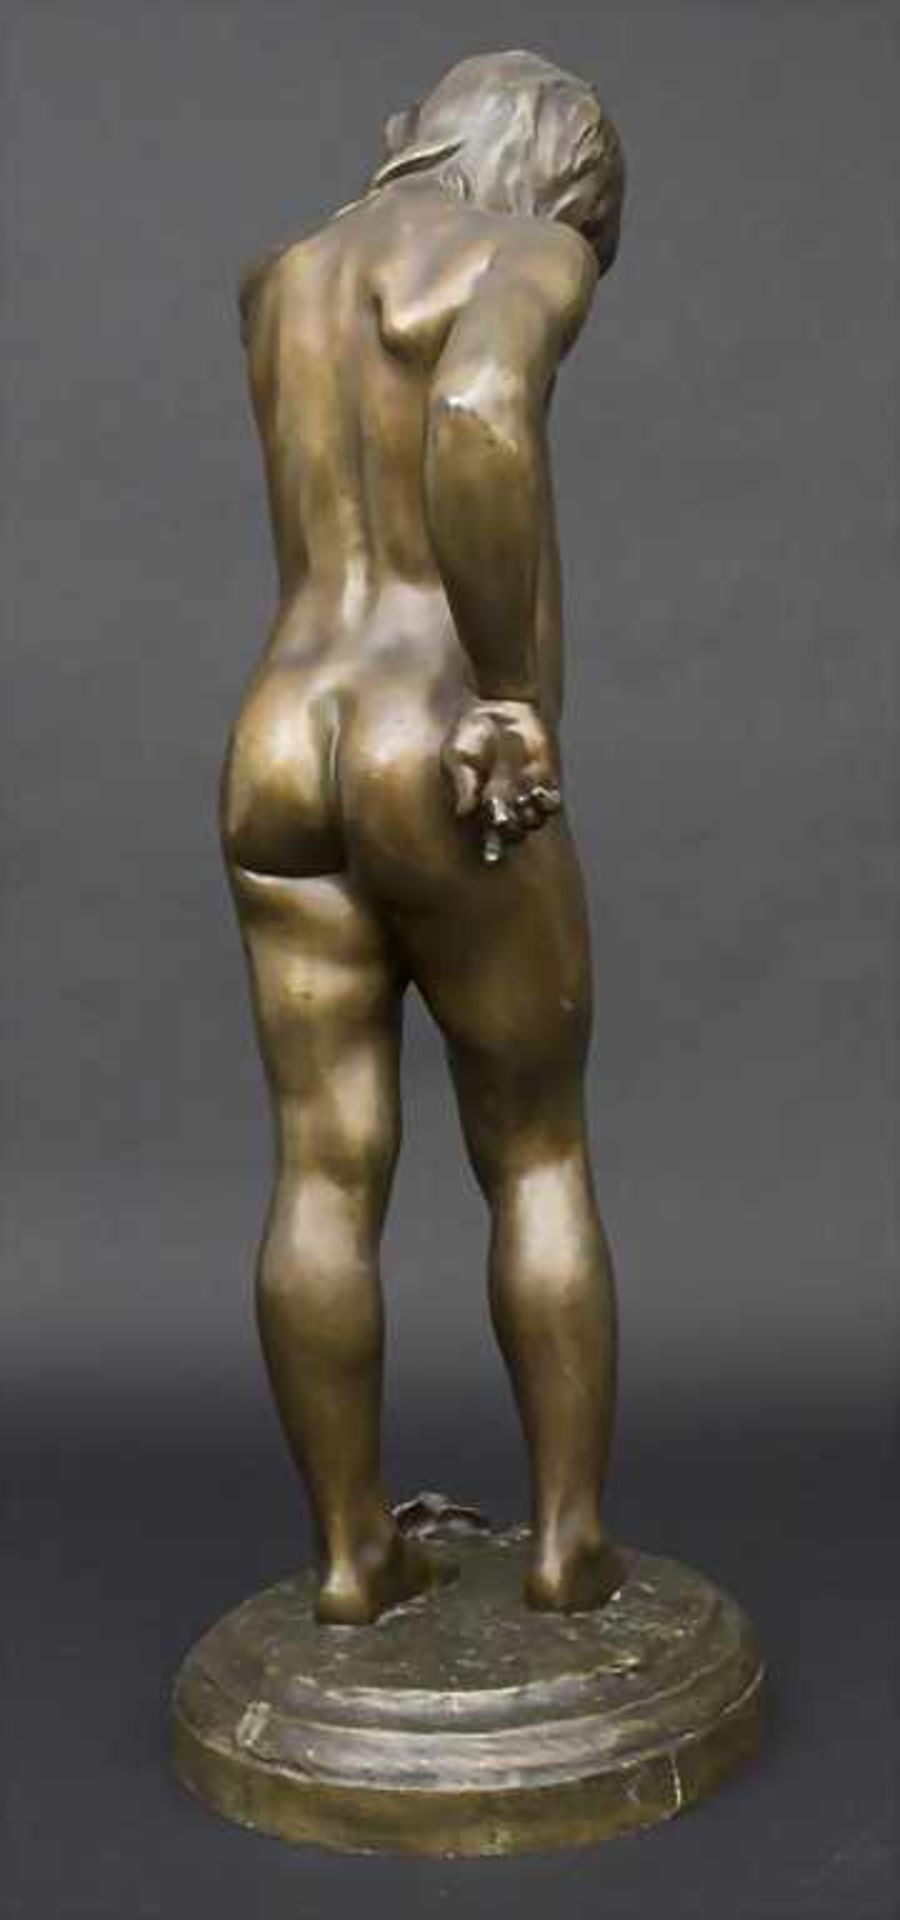 Jugendstil Bronze Skulptur 'Der Schmerz' / An Art Nouveau bronze sculpture 'The pain', Alix Marquet, - Image 3 of 6